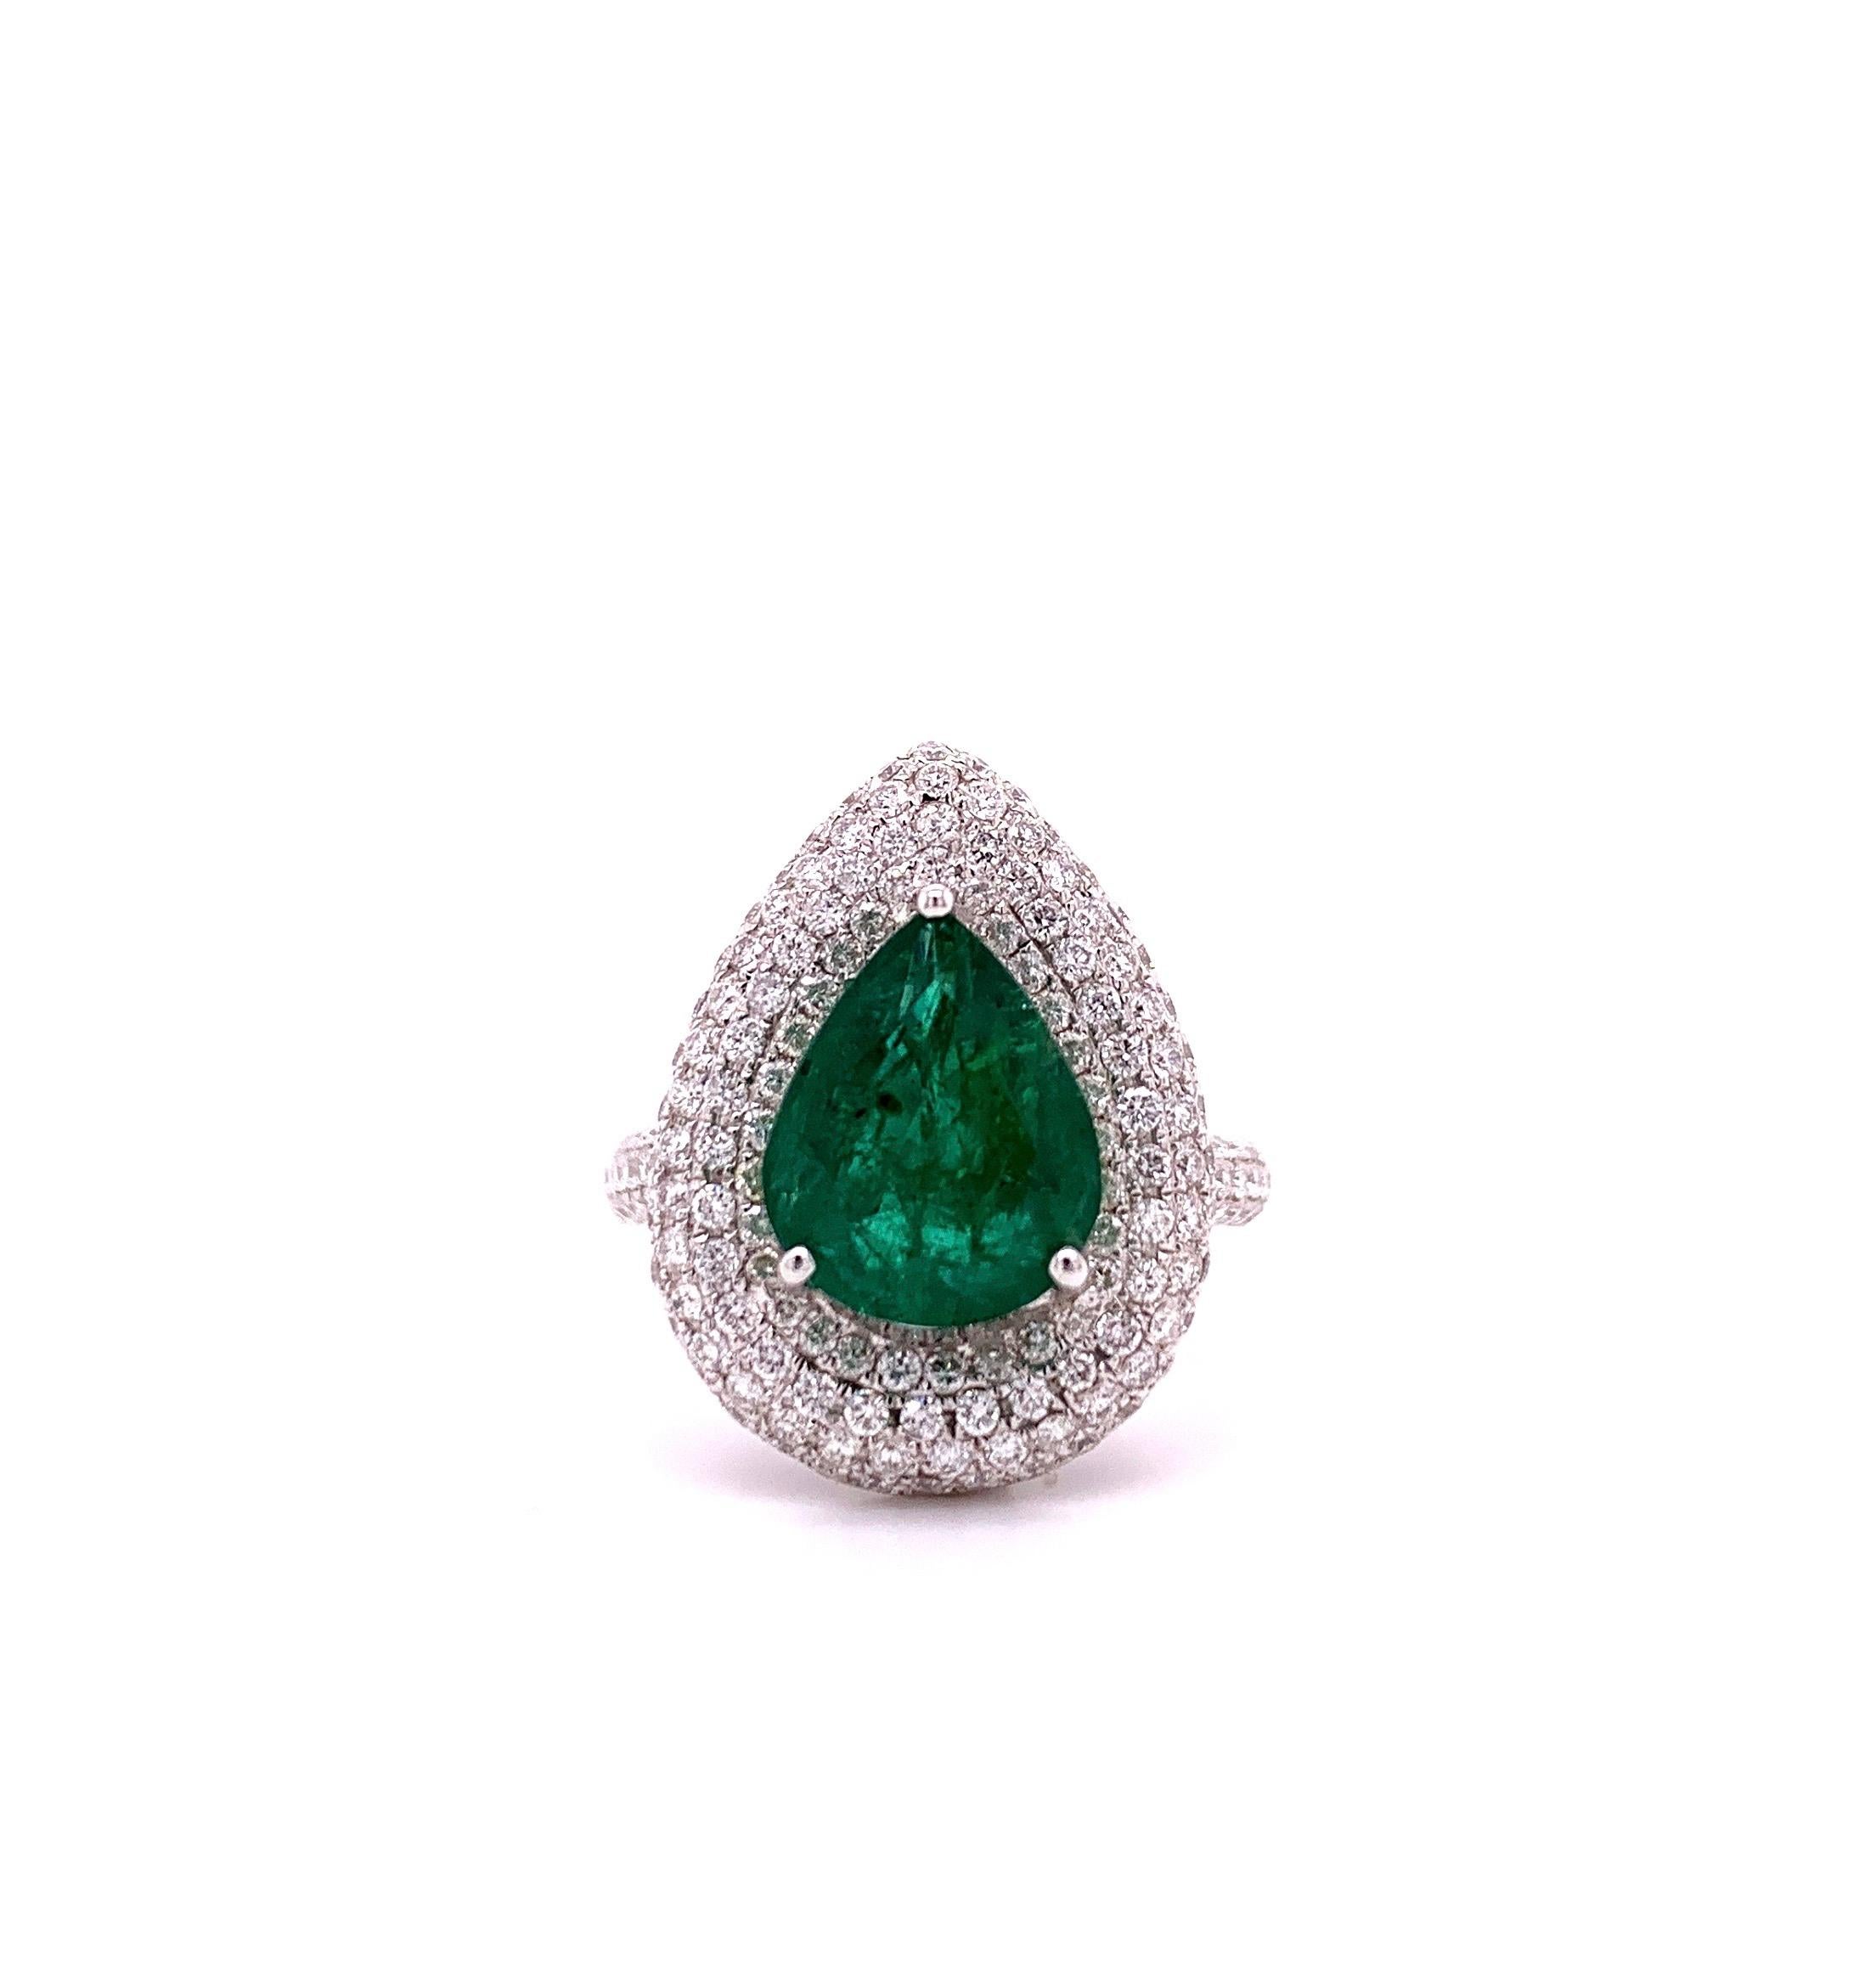 Atemberaubender Smaragd-Diamant-Cocktailring. Lebendiger, intensiv grüner, facettierter, natürlicher Smaragd von 3,19 Karat in offener Korbfassung mit drei Zacken, umrahmt von einem runden Diamantcluster im Brillantschliff, sowie einem